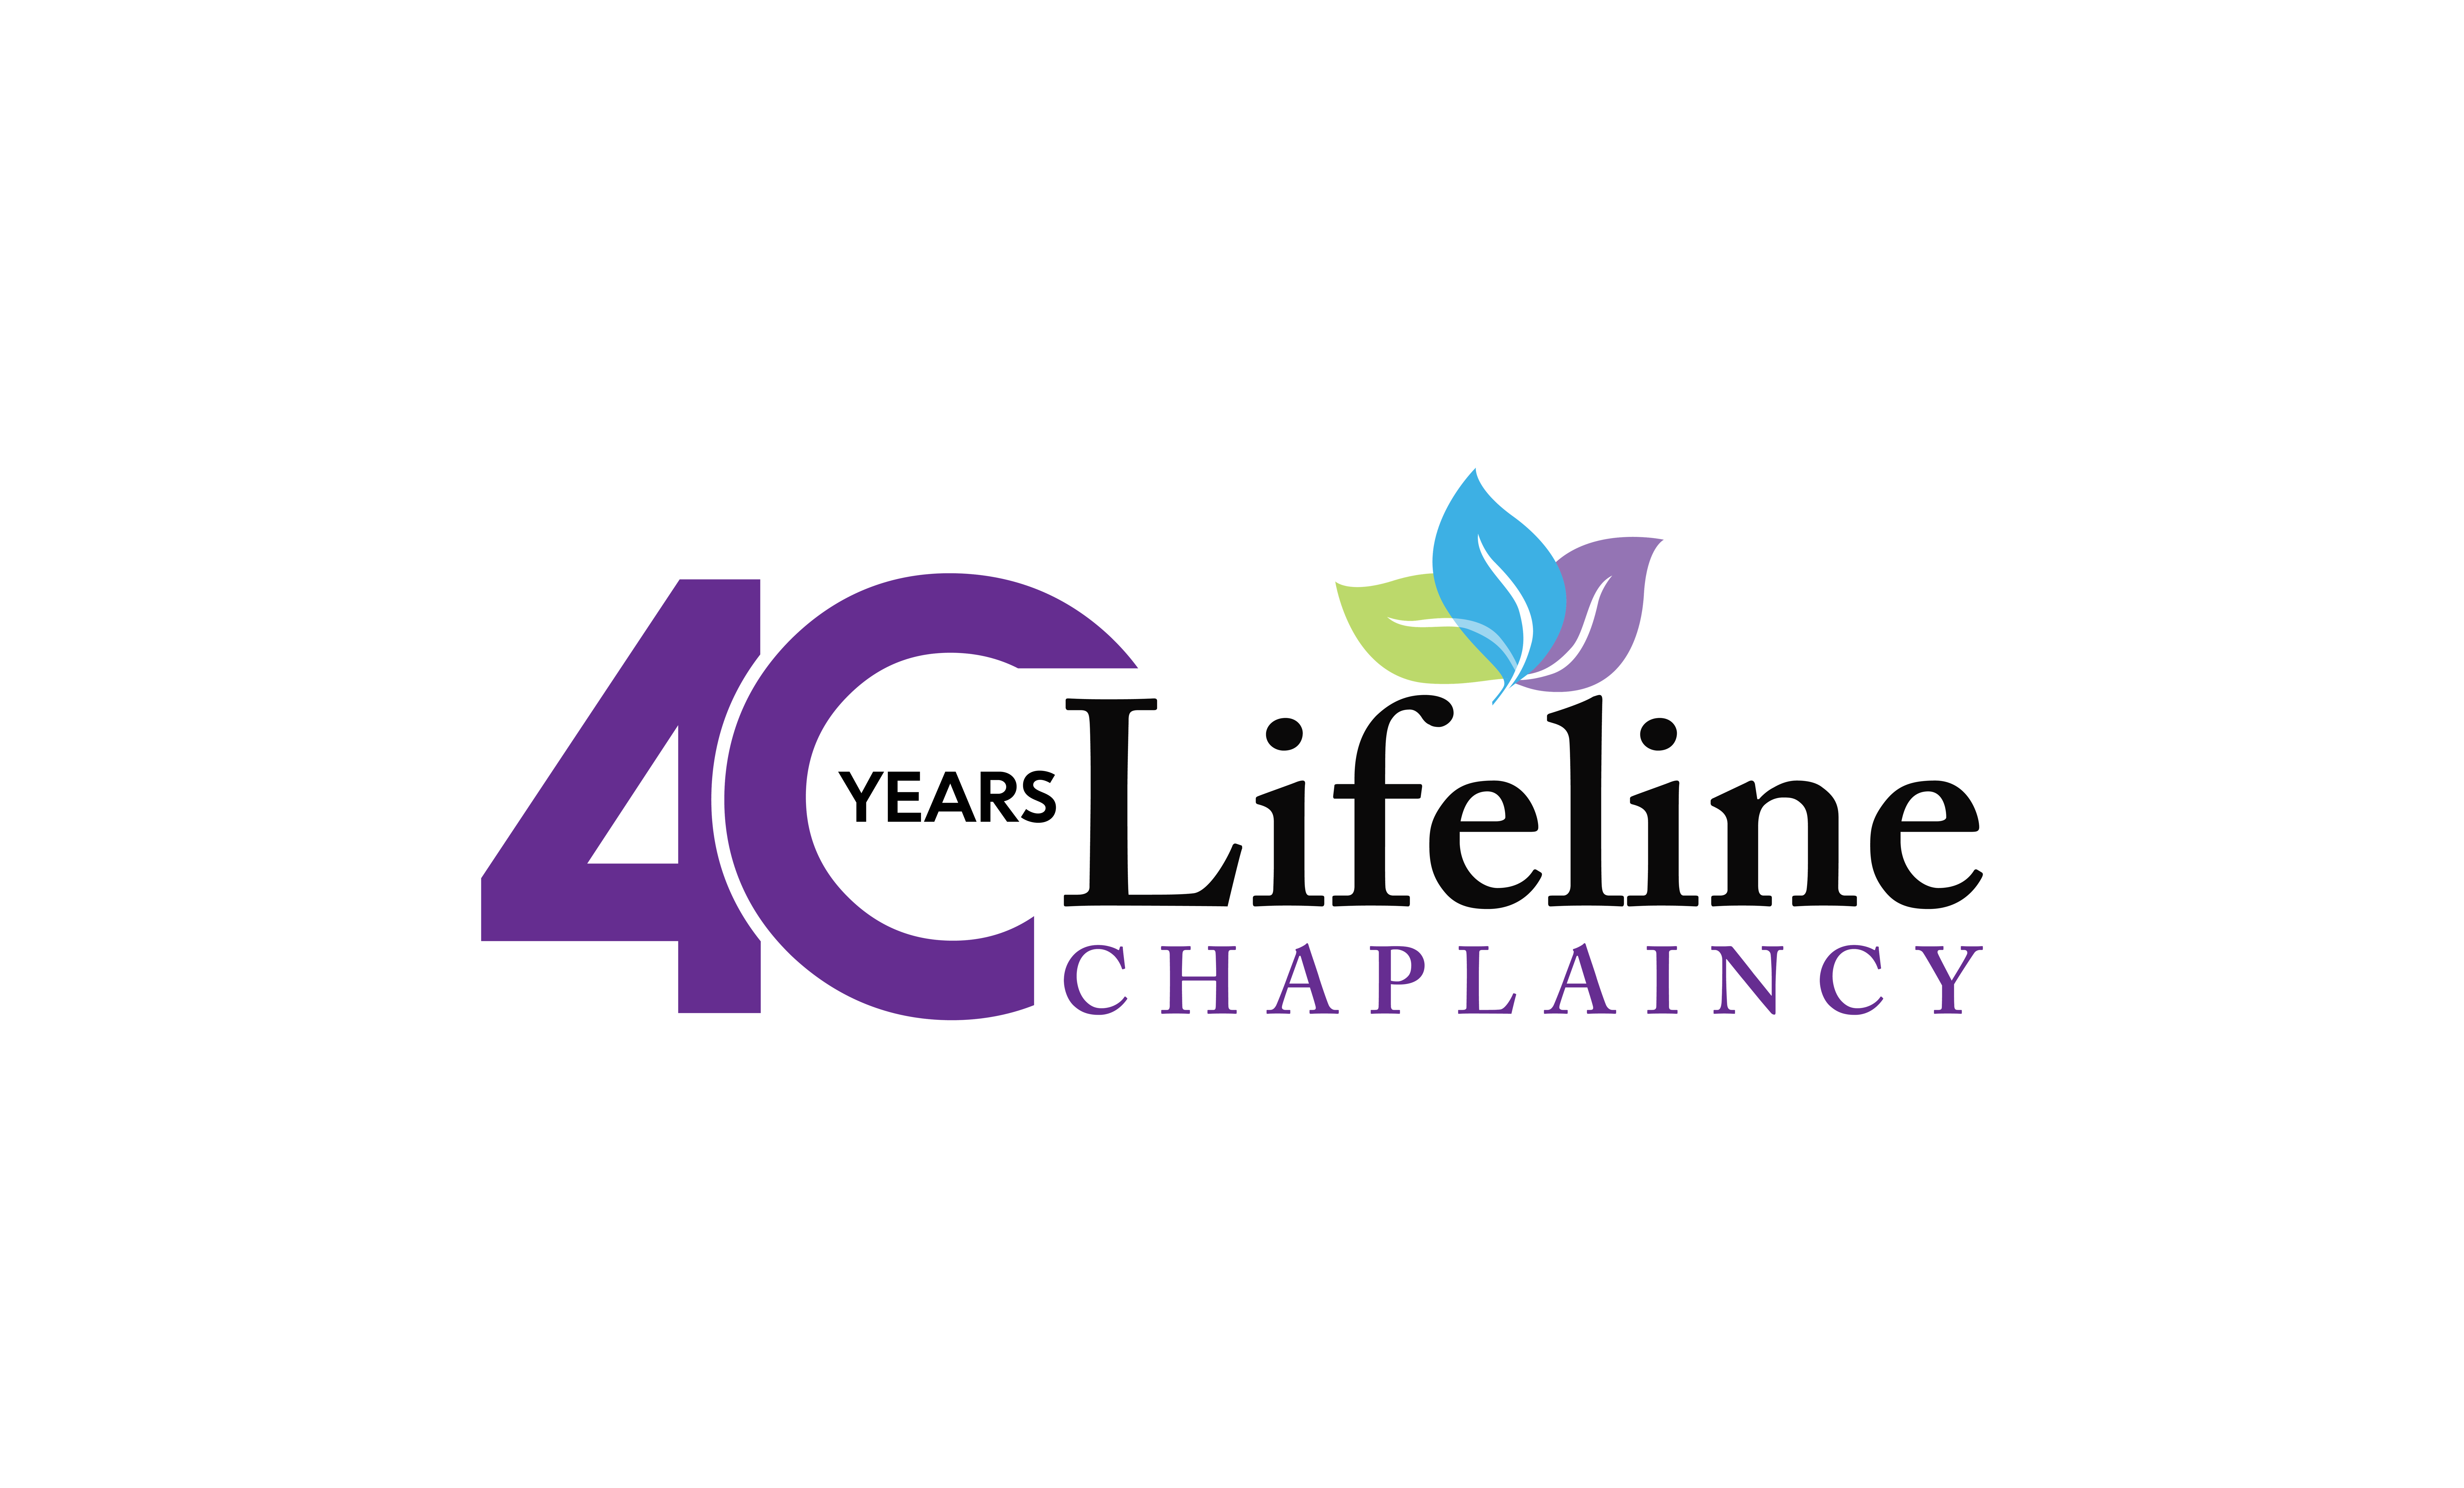 Lifeline Chaplaincy